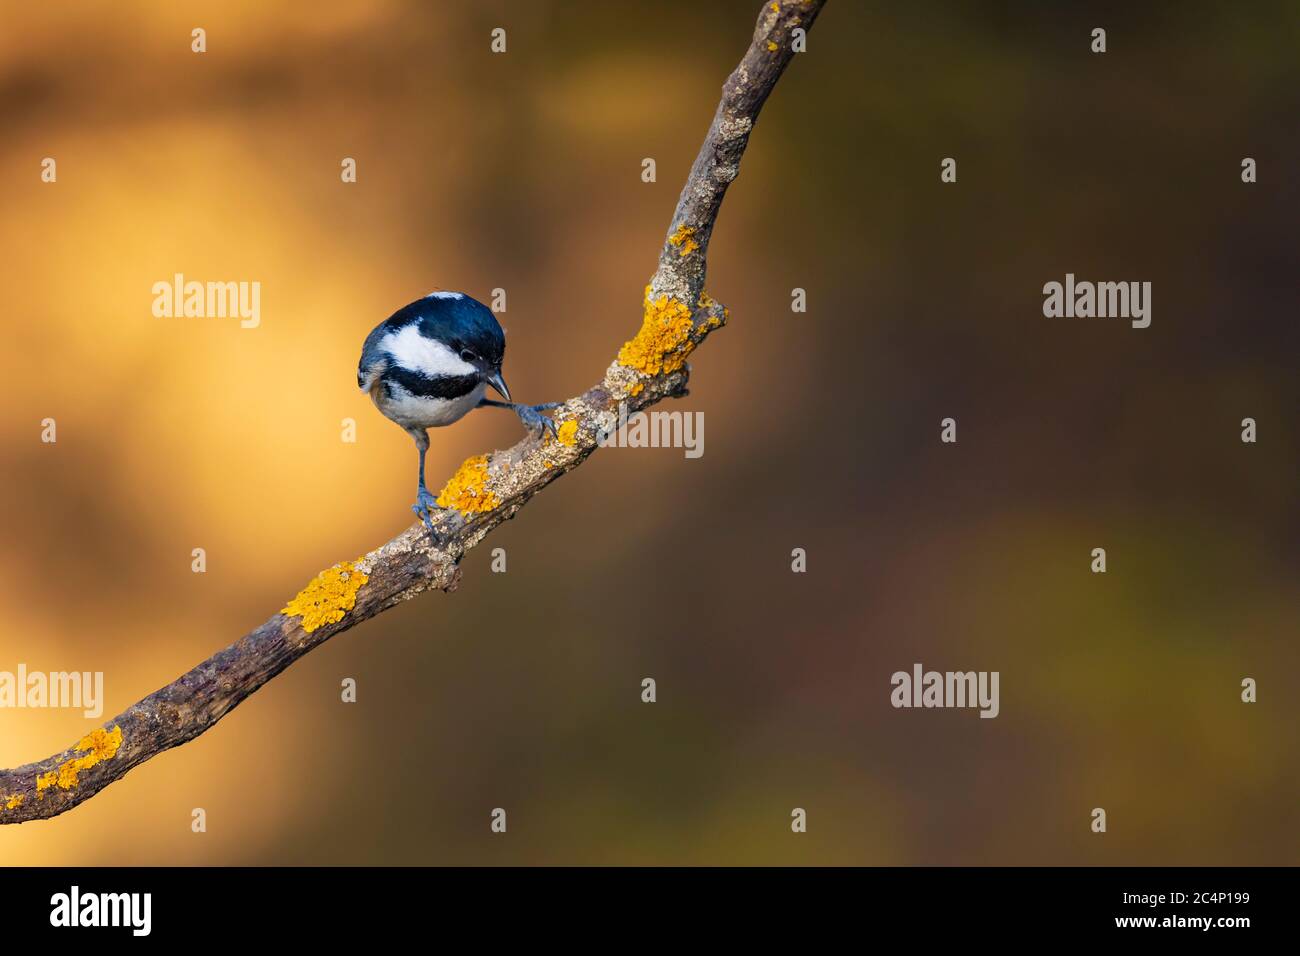 Cute little bird. Nature background. Park, garden forest bird: Coal tit. Stock Photo